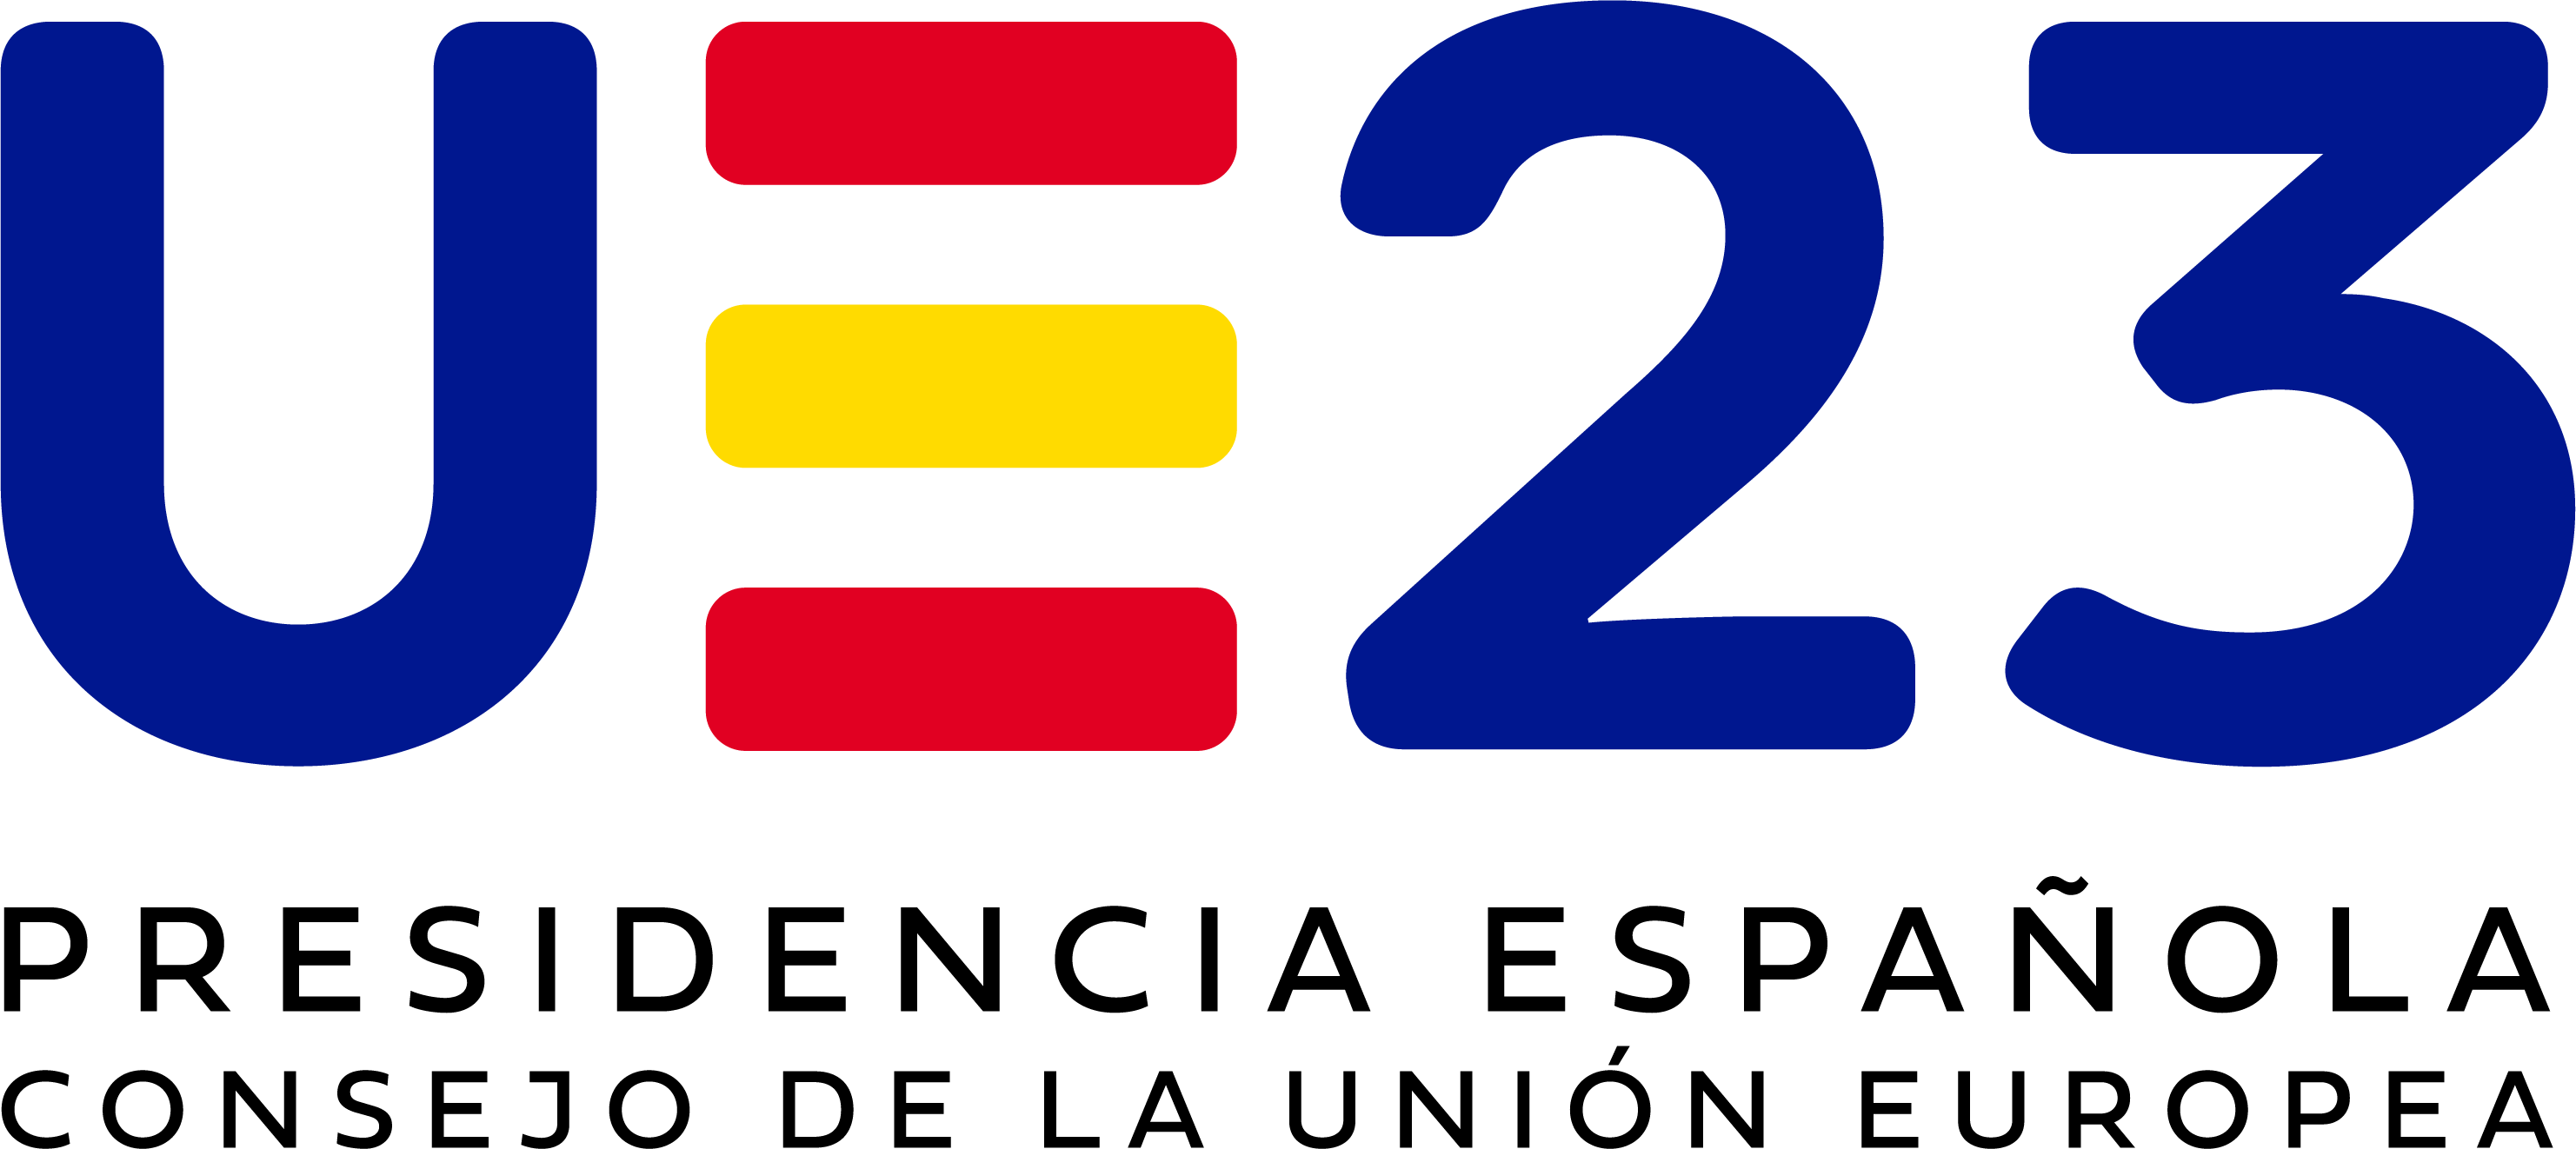 Spanish Presidency logo